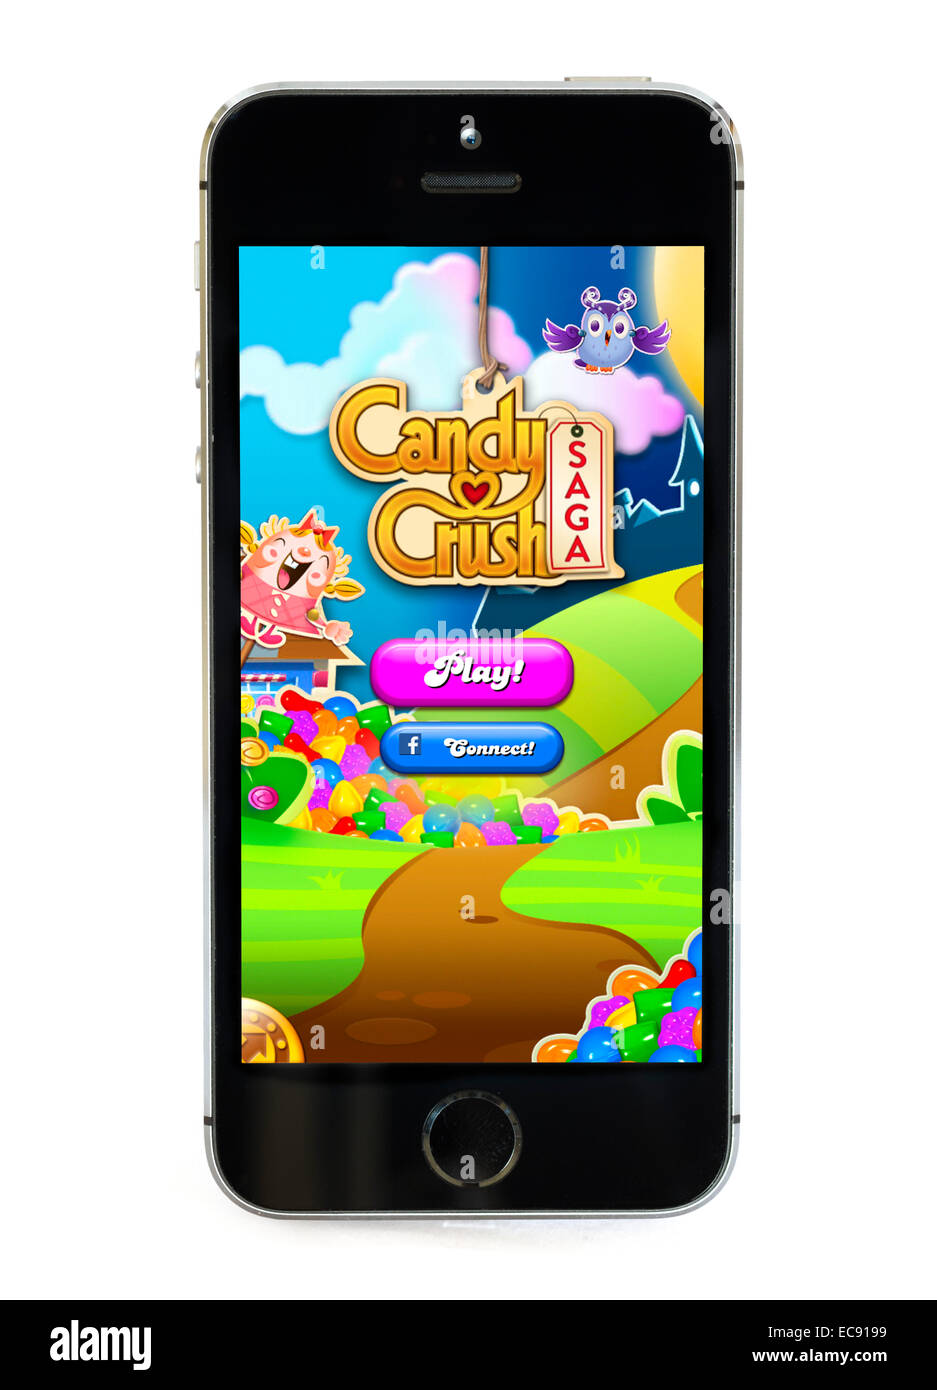 Candy crush game immagini e fotografie stock ad alta risoluzione - Alamy